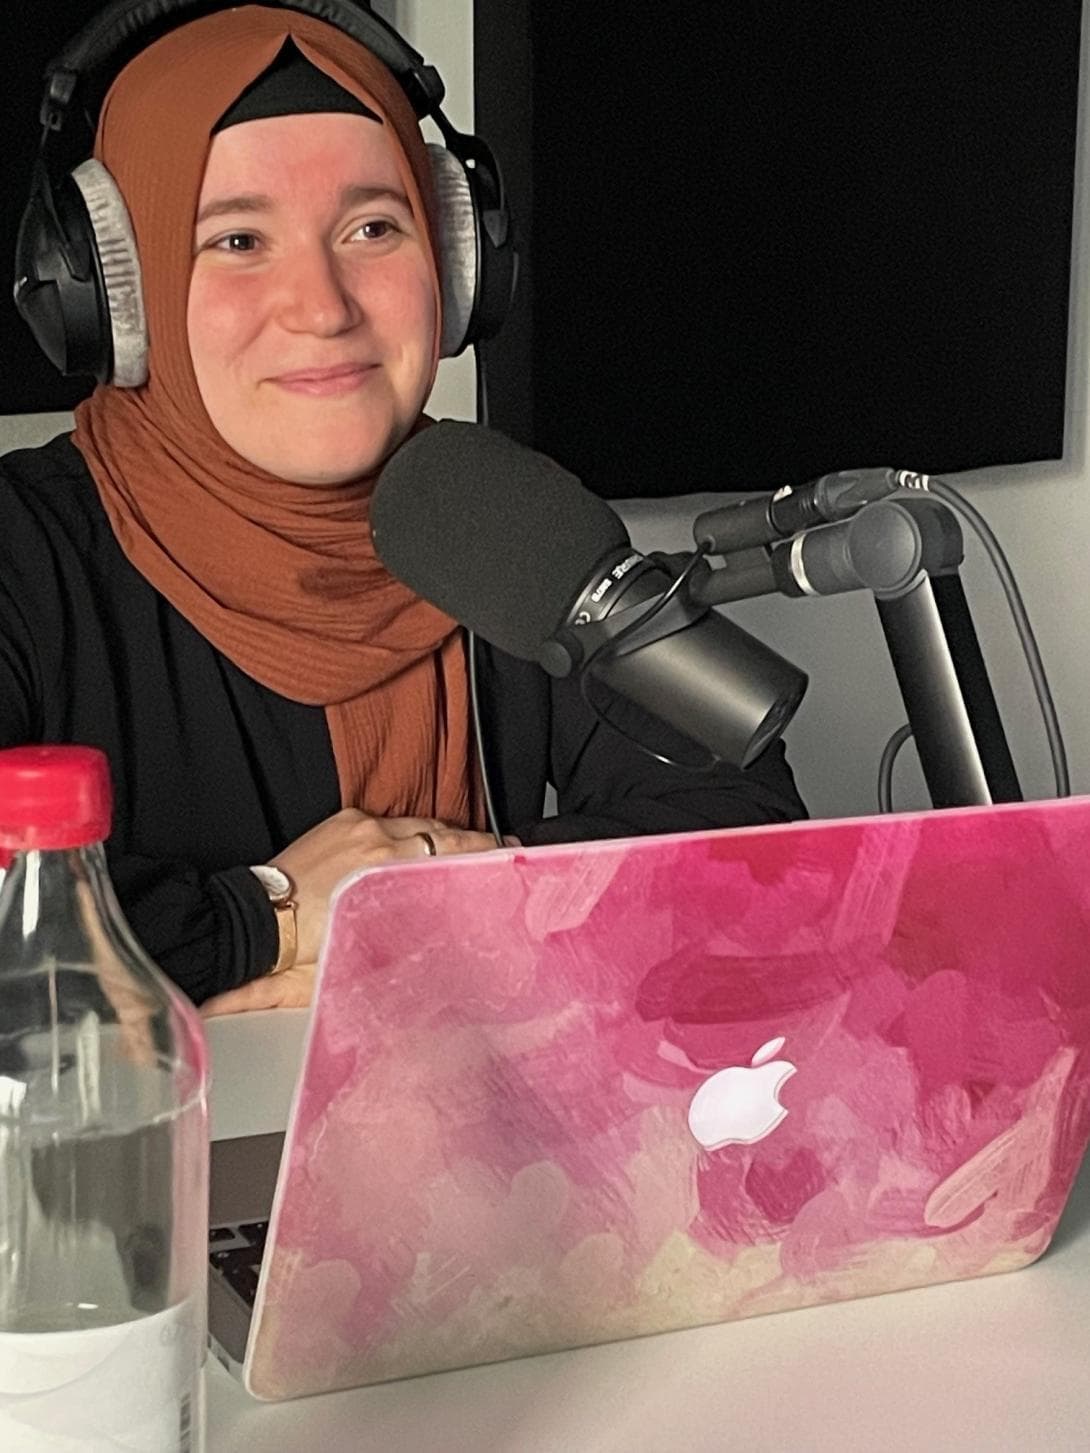 Podcasterin Kübra Dalkilic mit ihrem pink gefärbten Laptop